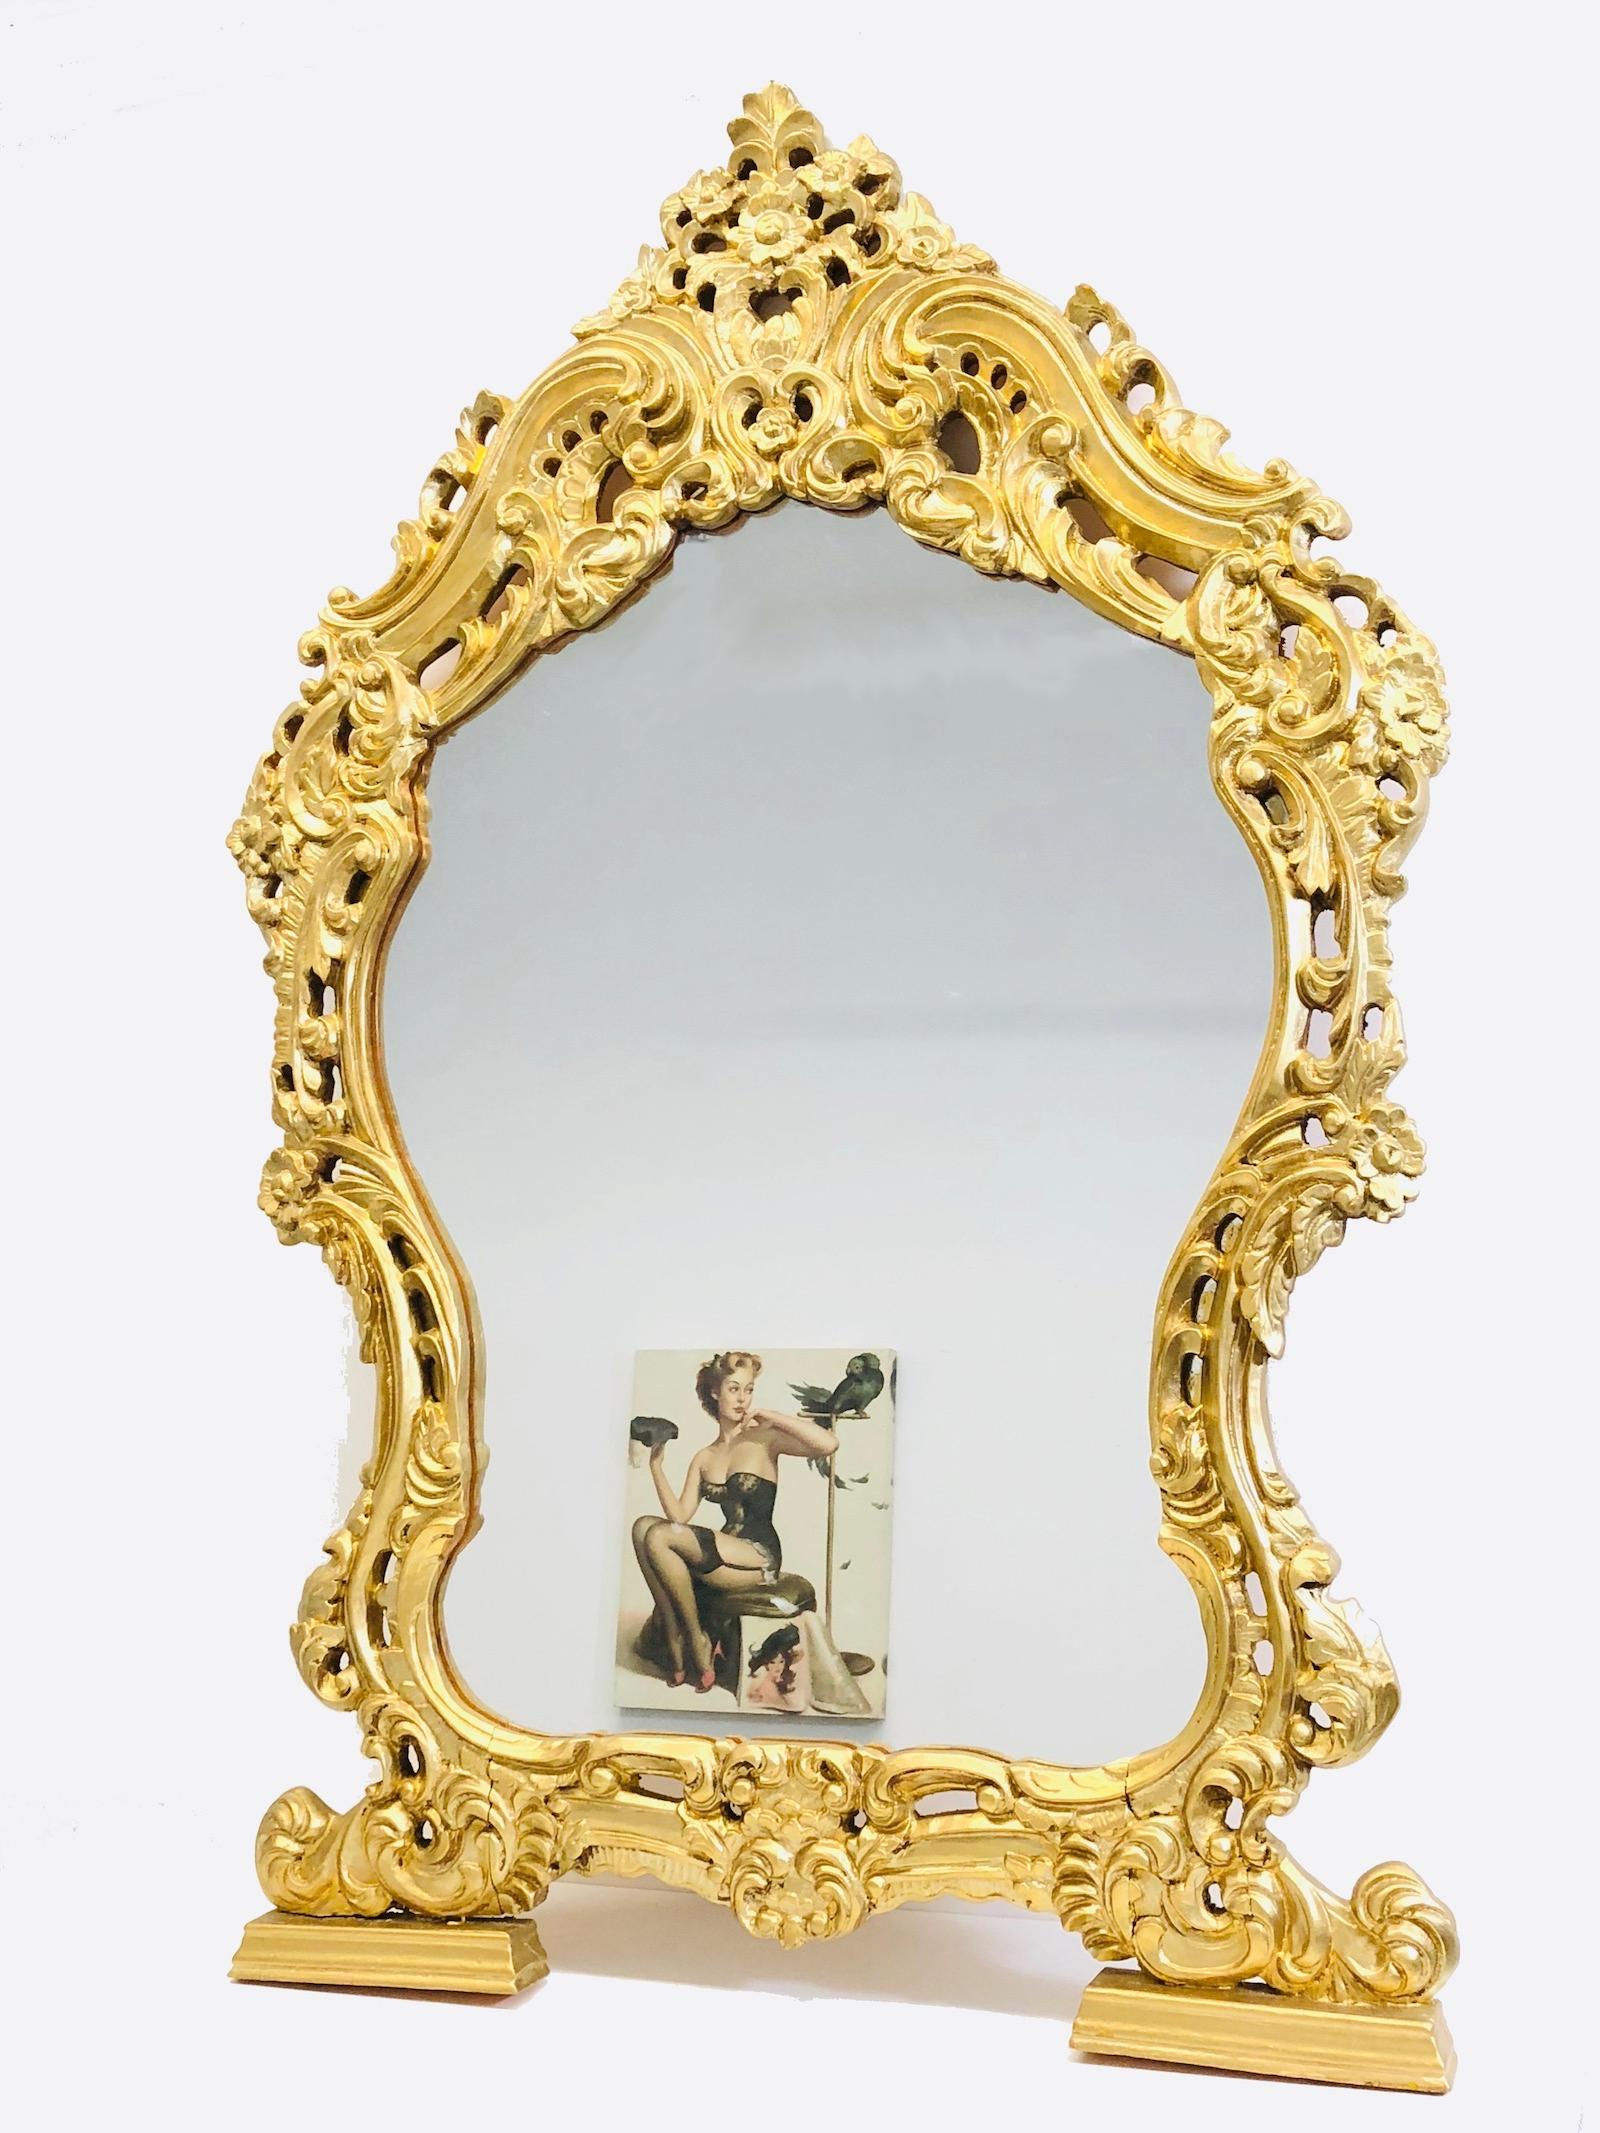 Atemberaubend großer geschnitzter Spiegel im Hollywood-Regency-Stil. Der Rahmen aus vergoldetem Holz umgibt einen Glasspiegel. Hergestellt in Italien.